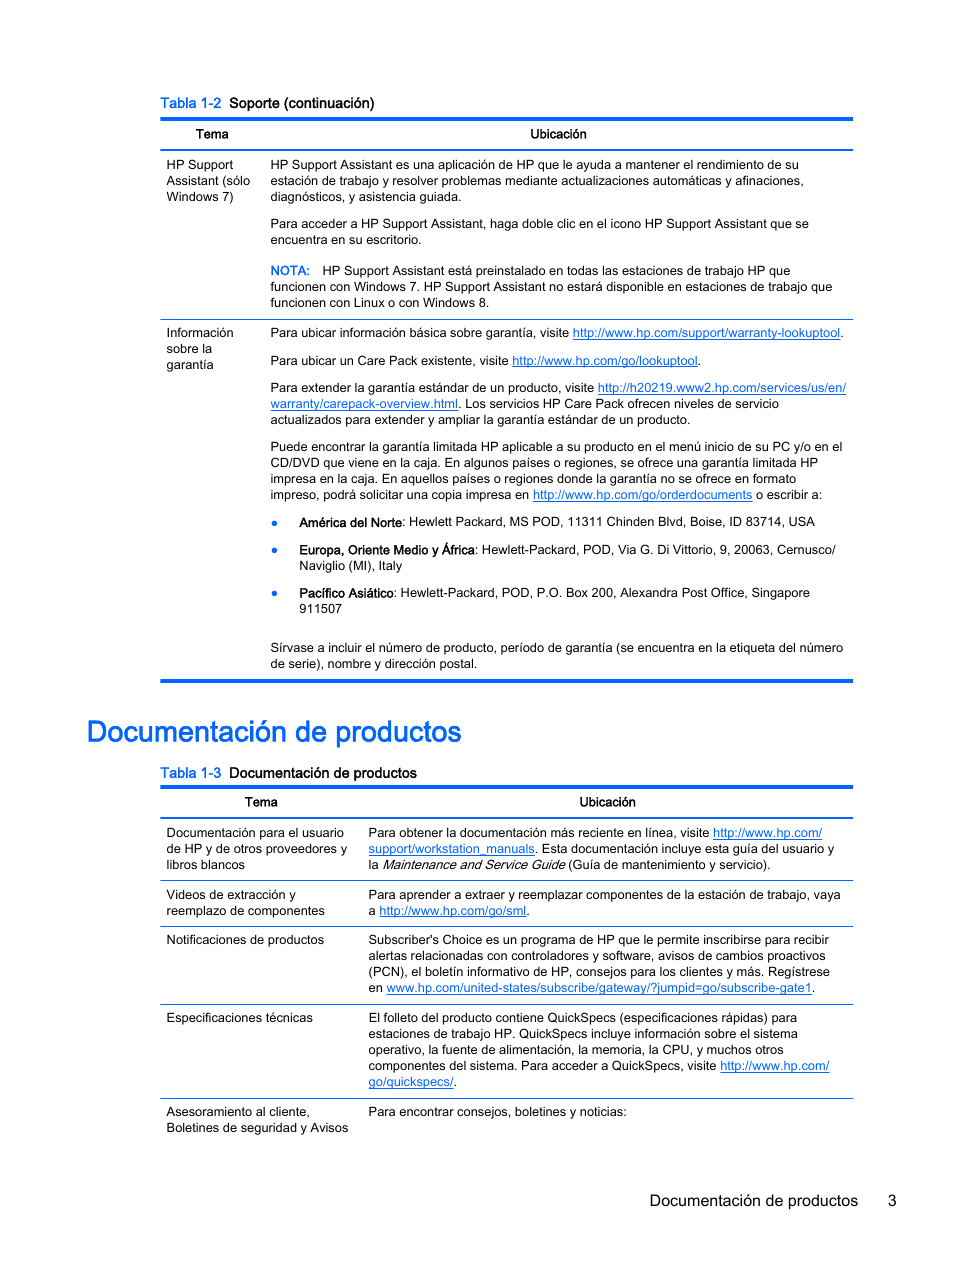 Documentación de productos, Documentación de productos 3 | HP Estación de trabajo HP Z820 Manual del usuario | Página 11 / 61